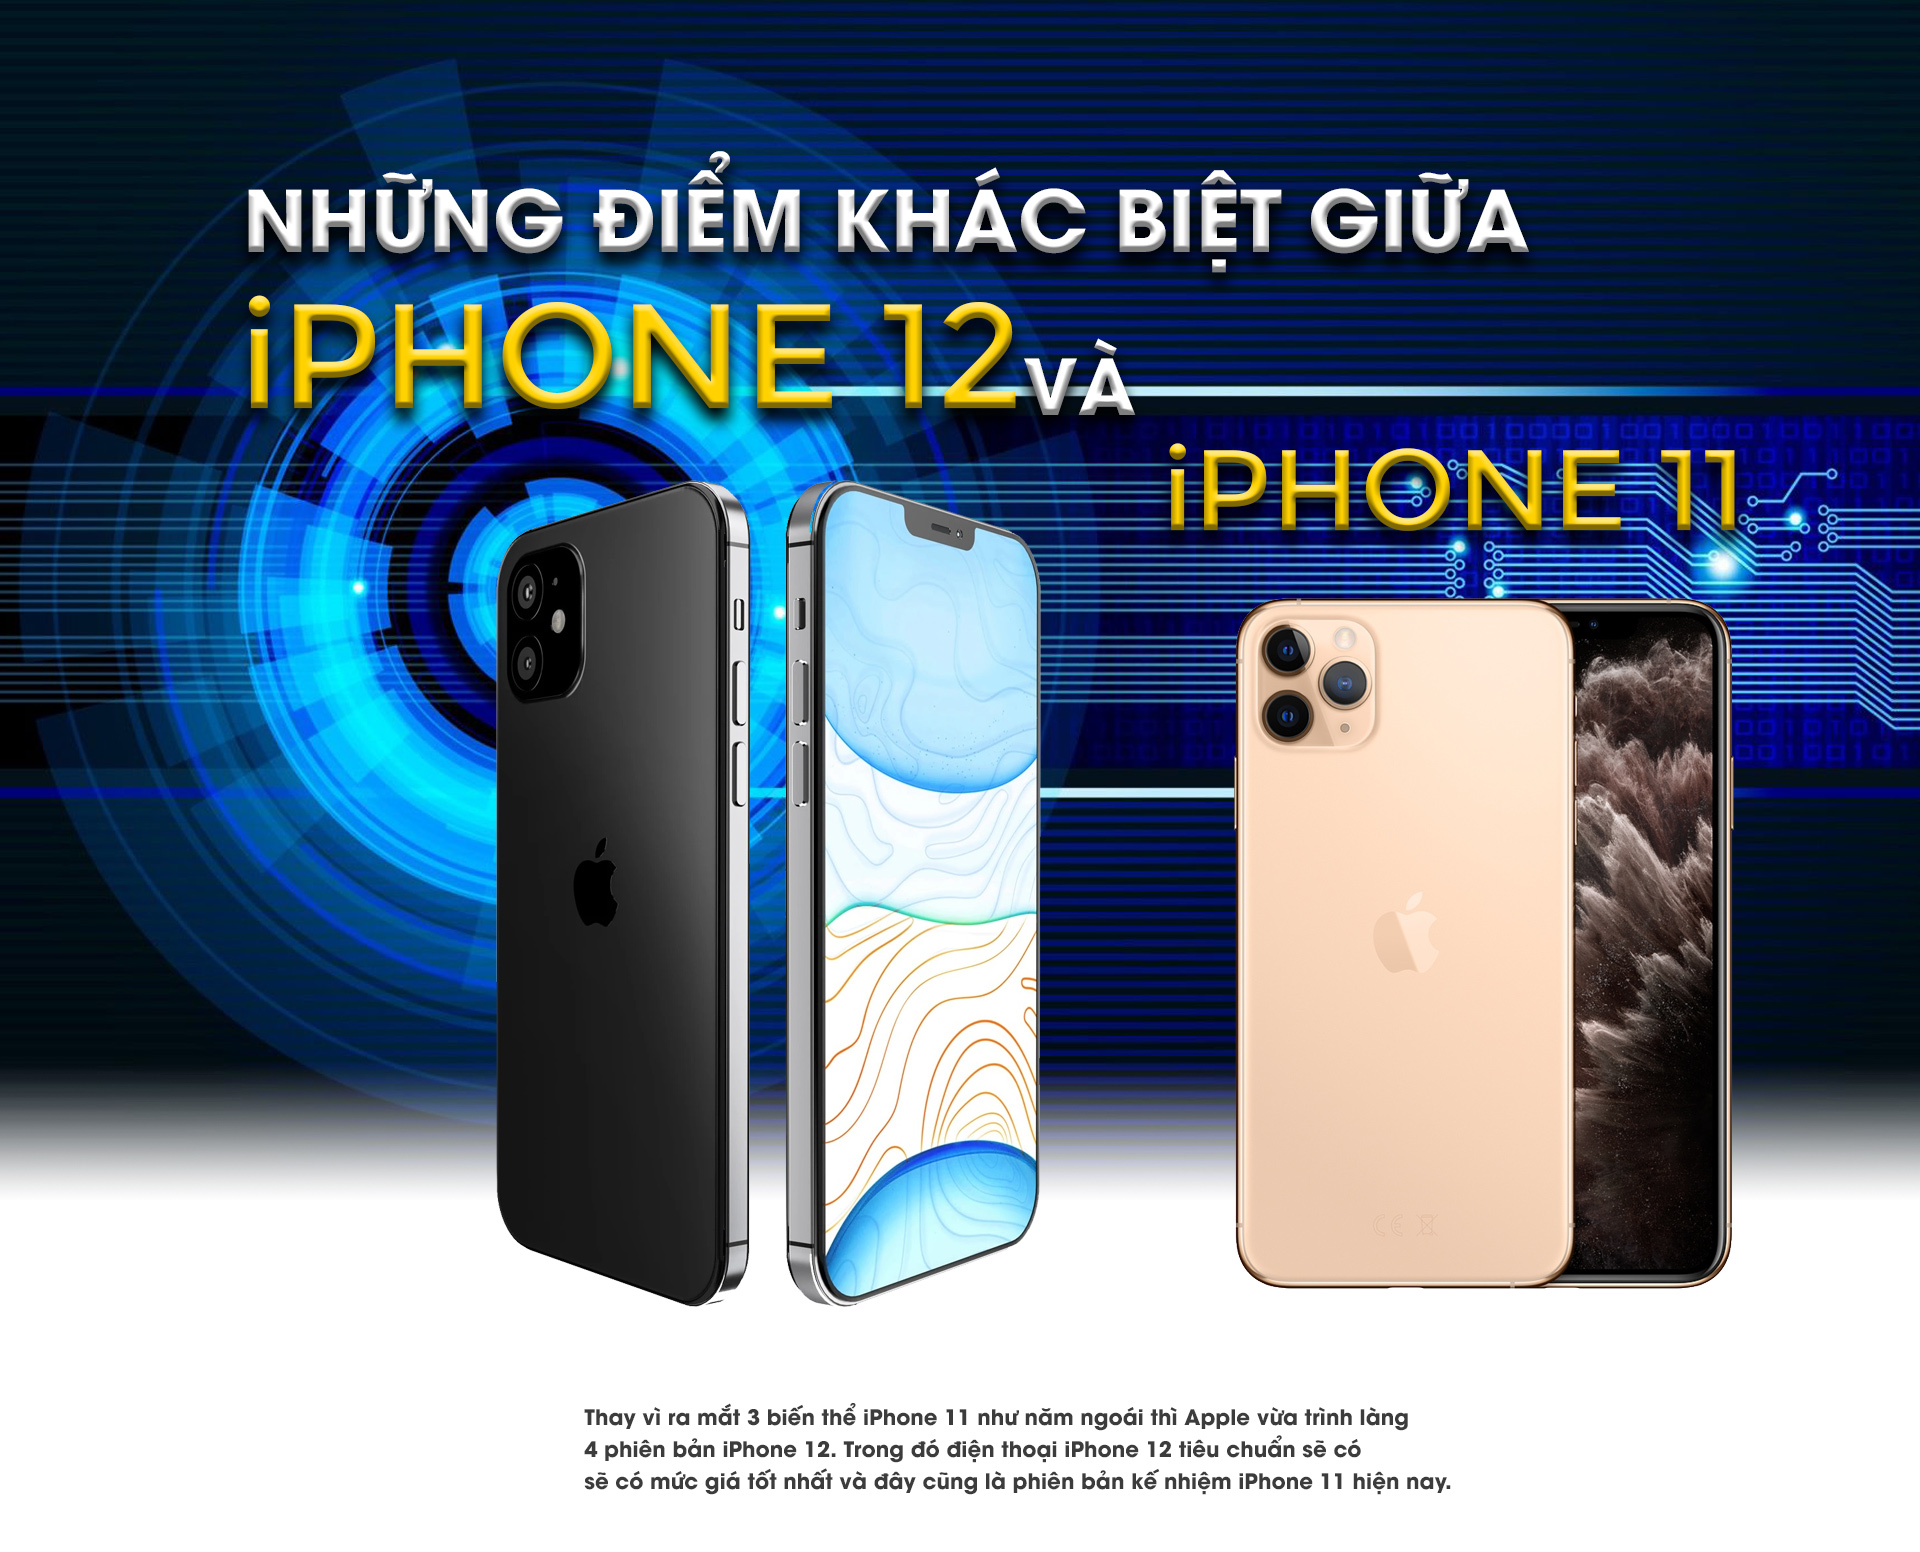 Đây là những điểm khác biệt giữa iPhone 12 và iPhone 11 - 1